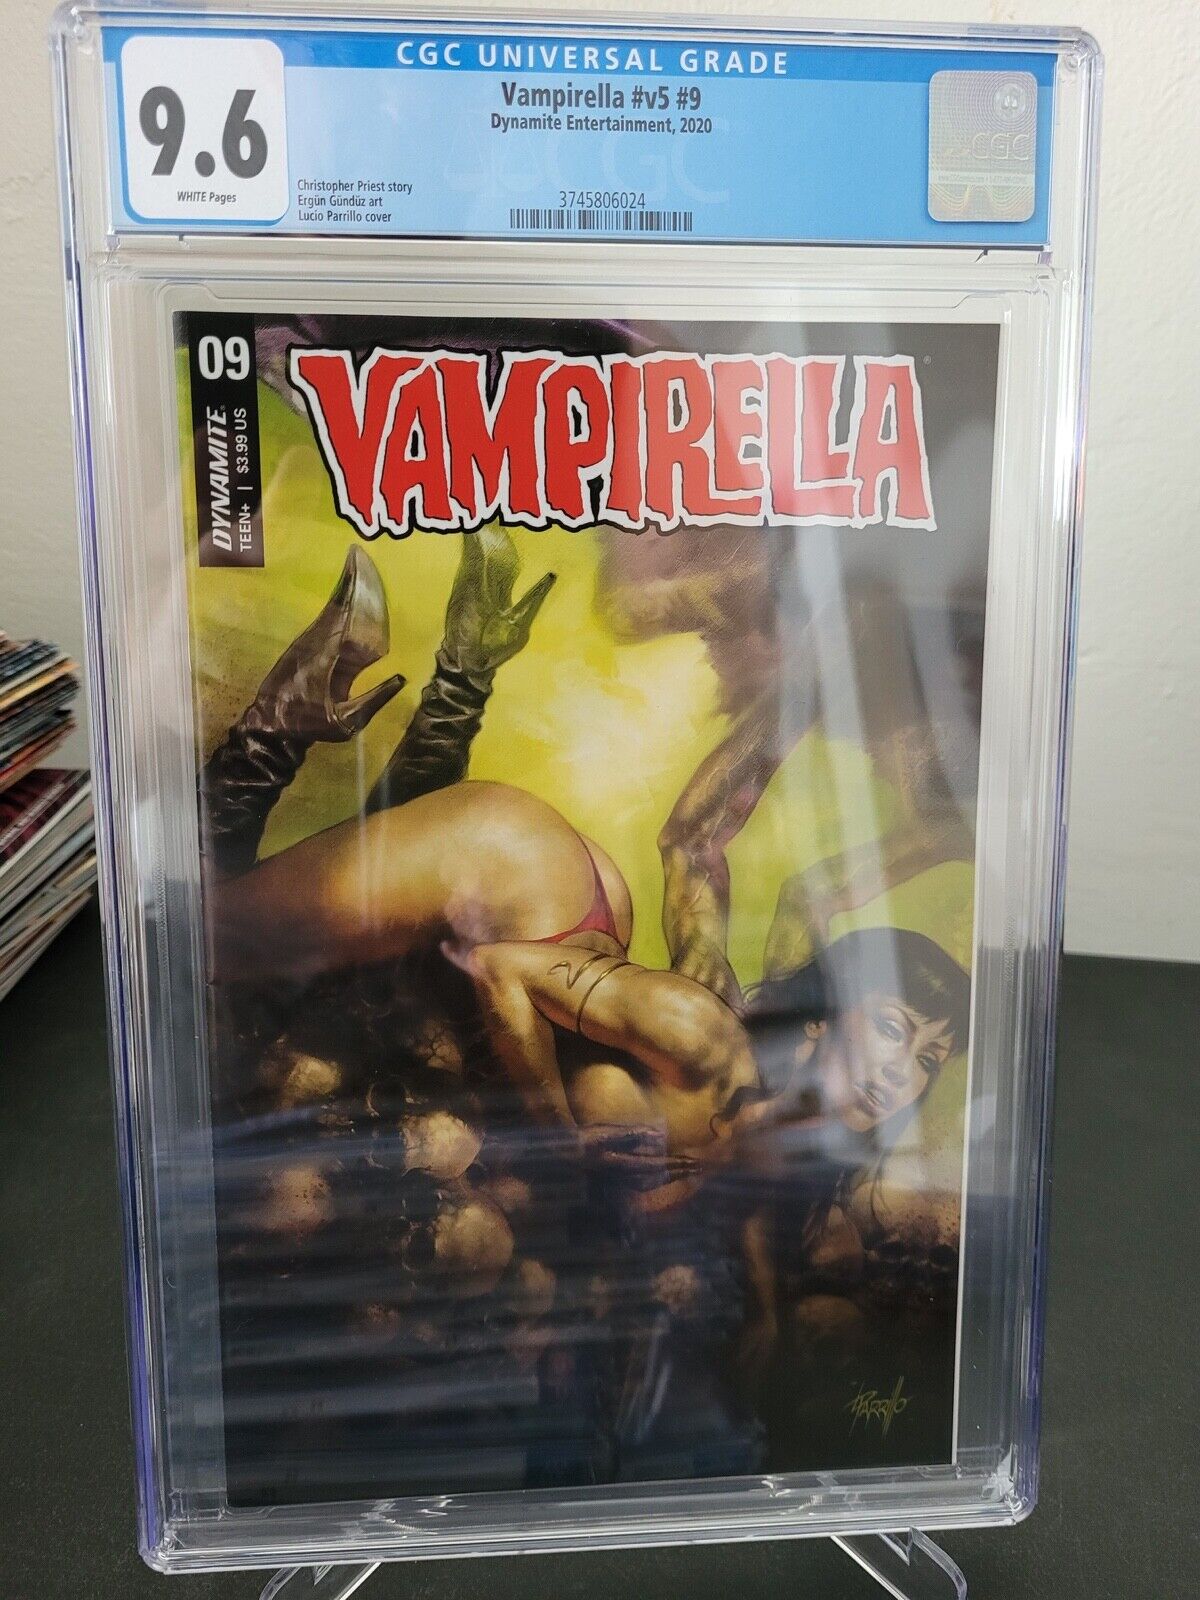 VAMPIRELLA Vol 5 #9 CGC 9.6 GRADED DYNAMITE COMICS 2020 LUCIO PARRILLO COVER